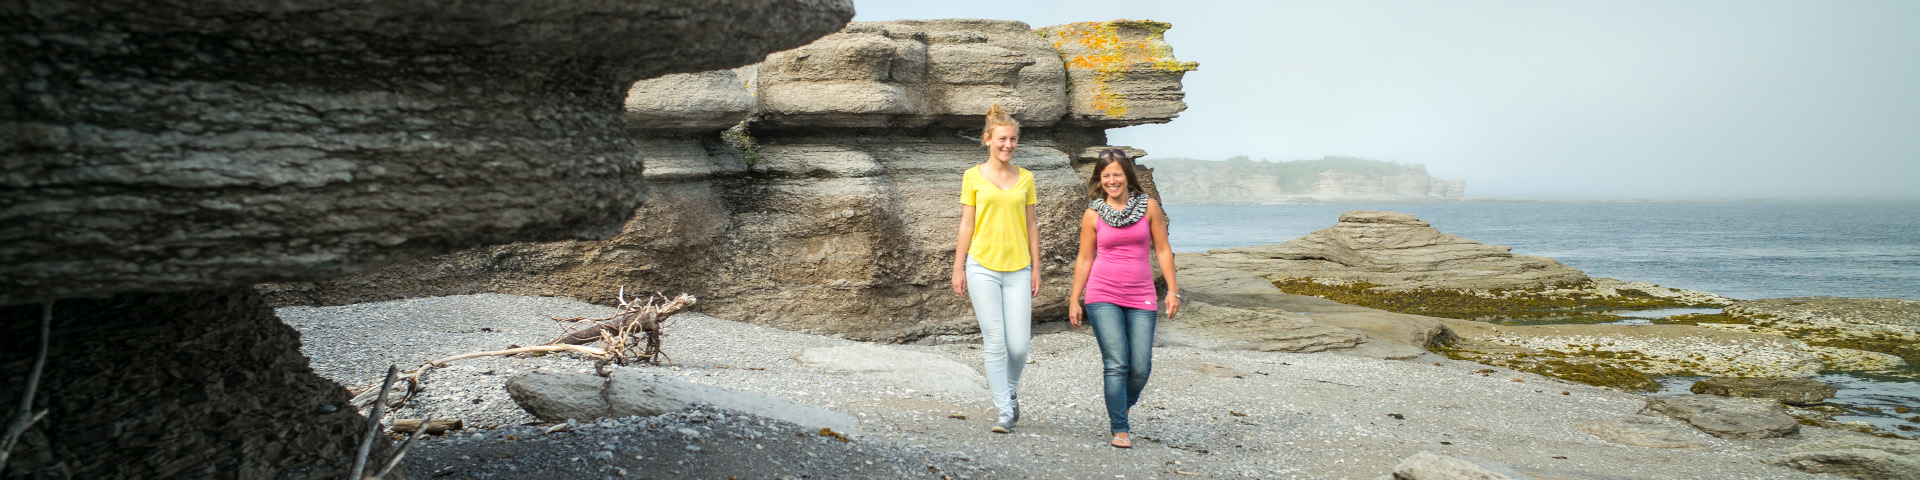 Une femme et sa fille marchent sur le littoral, près de monolithes.